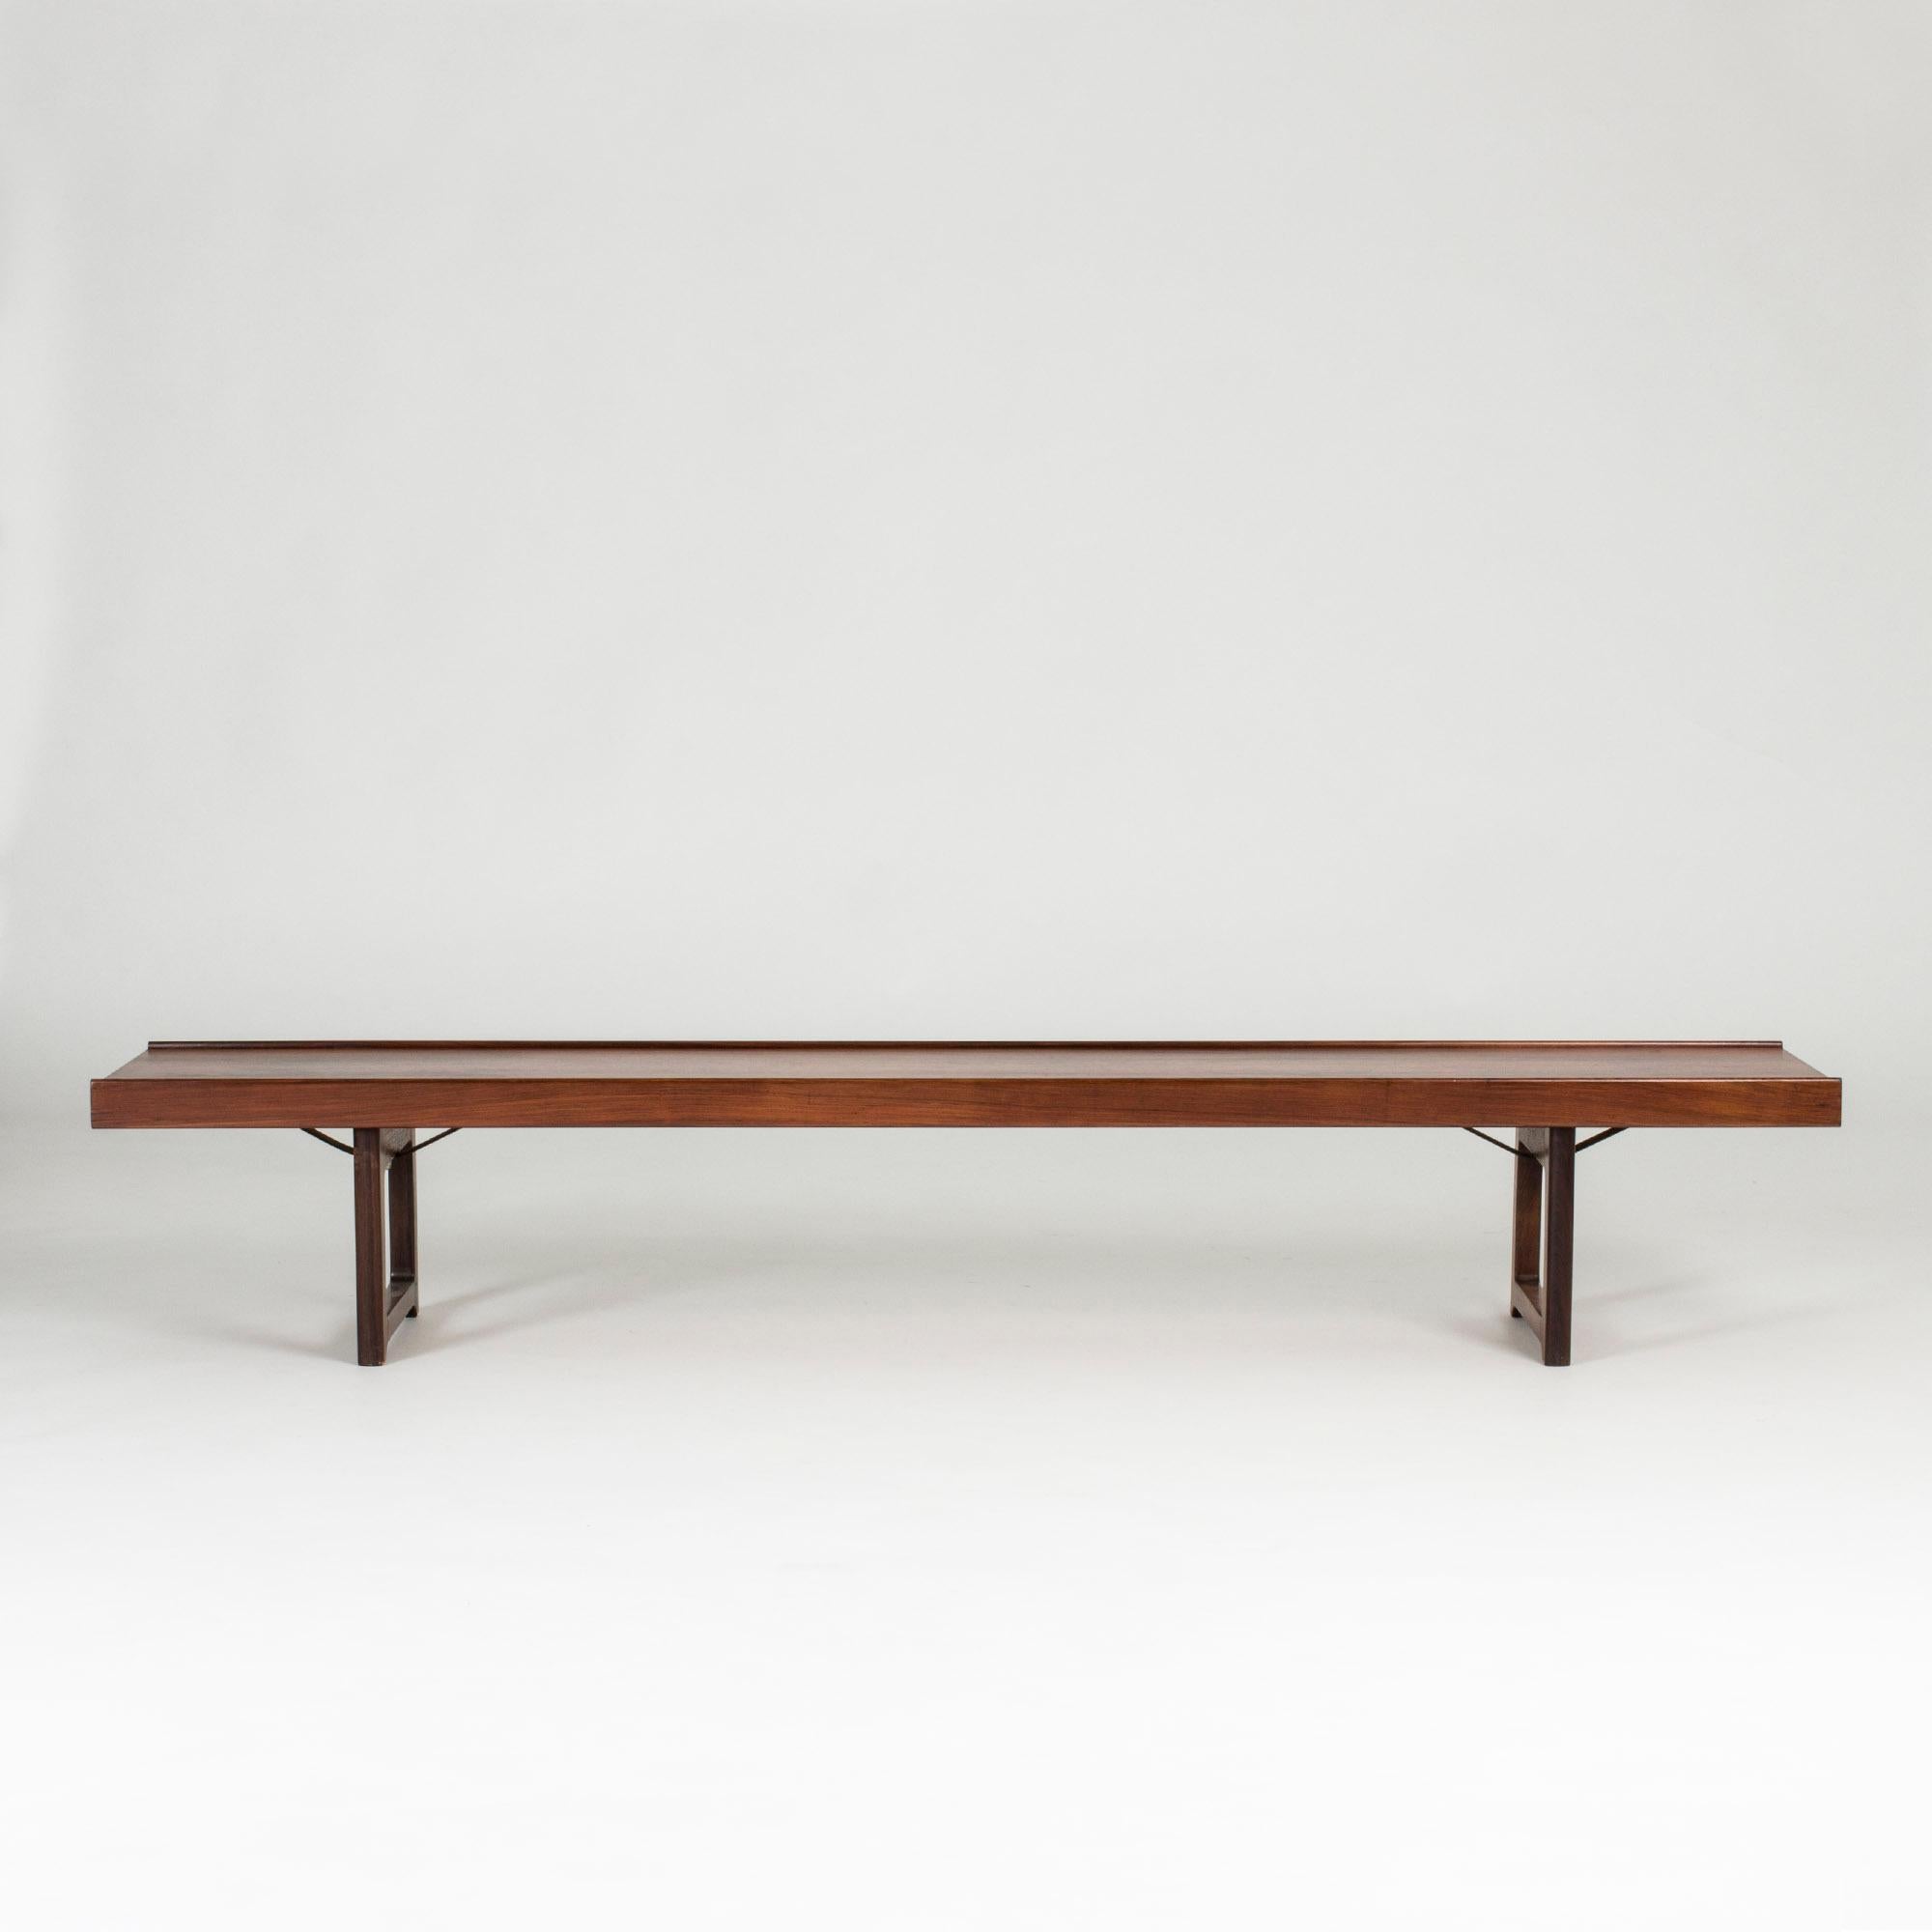 Sleek rosewood “Krobo” bench by Torbjørn Afdal, with black metal extenders underneath. Great as a sideboard or room divider.